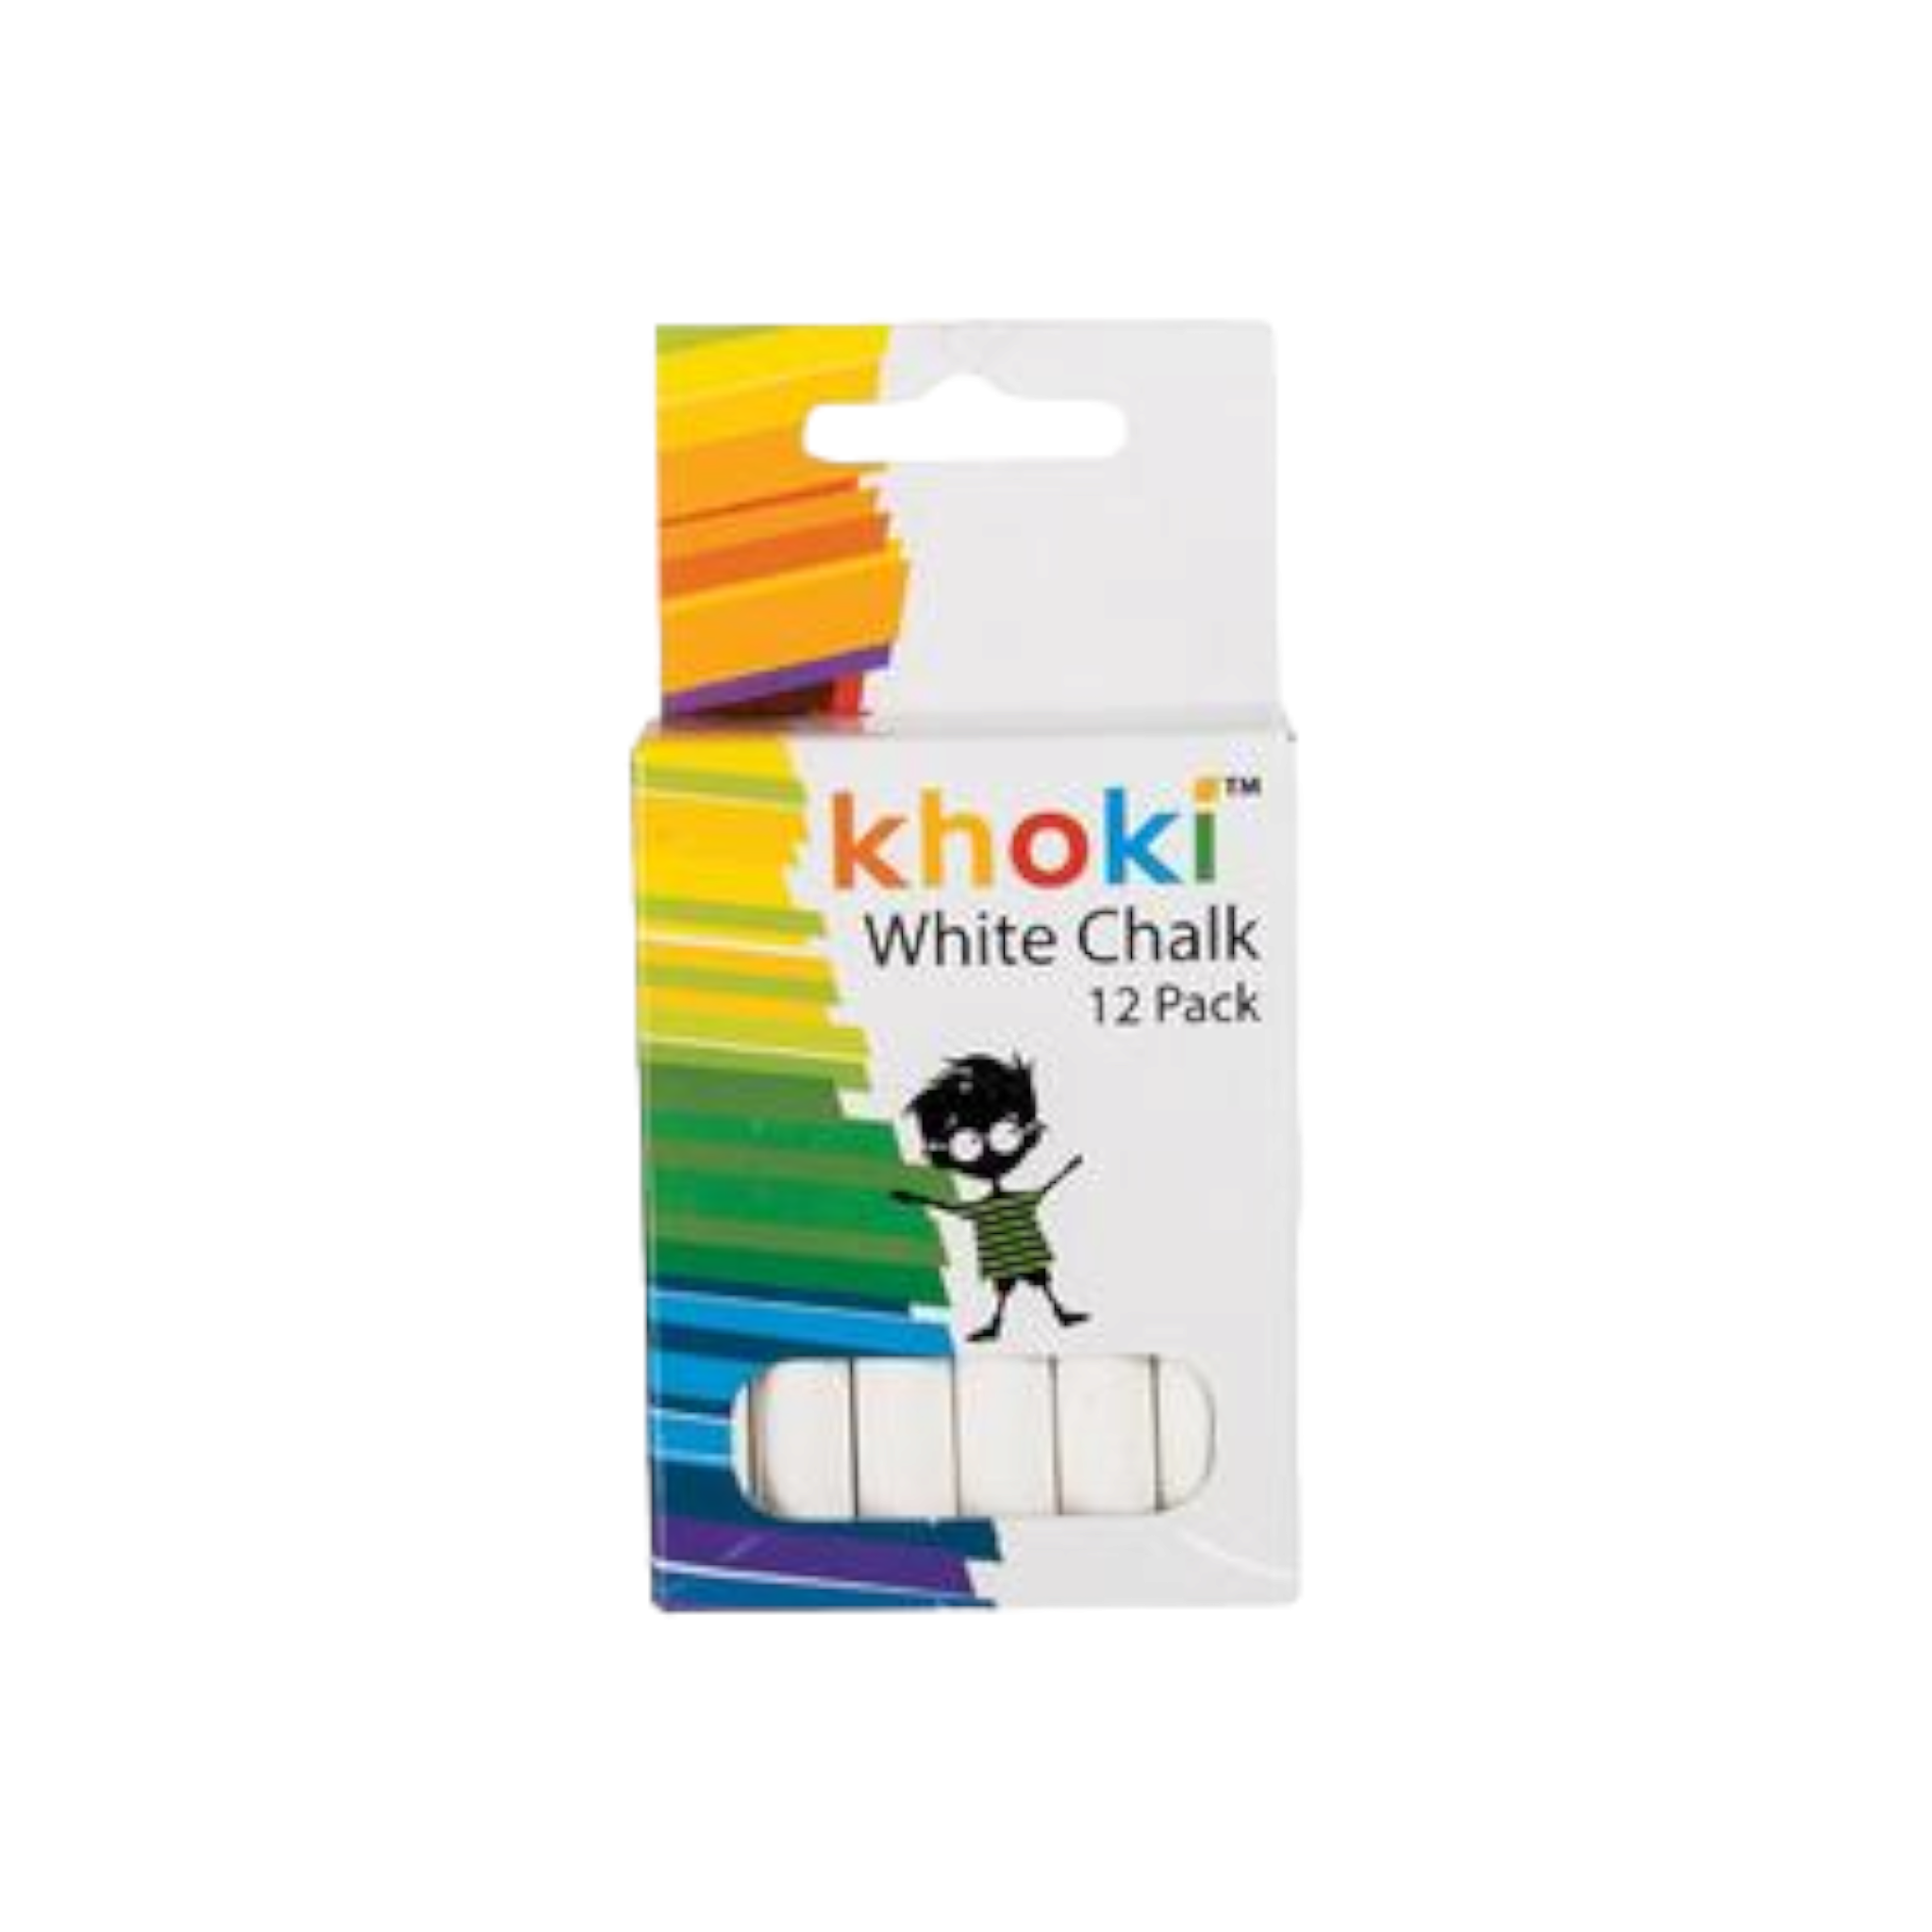 Khoki White Chalk 12pc